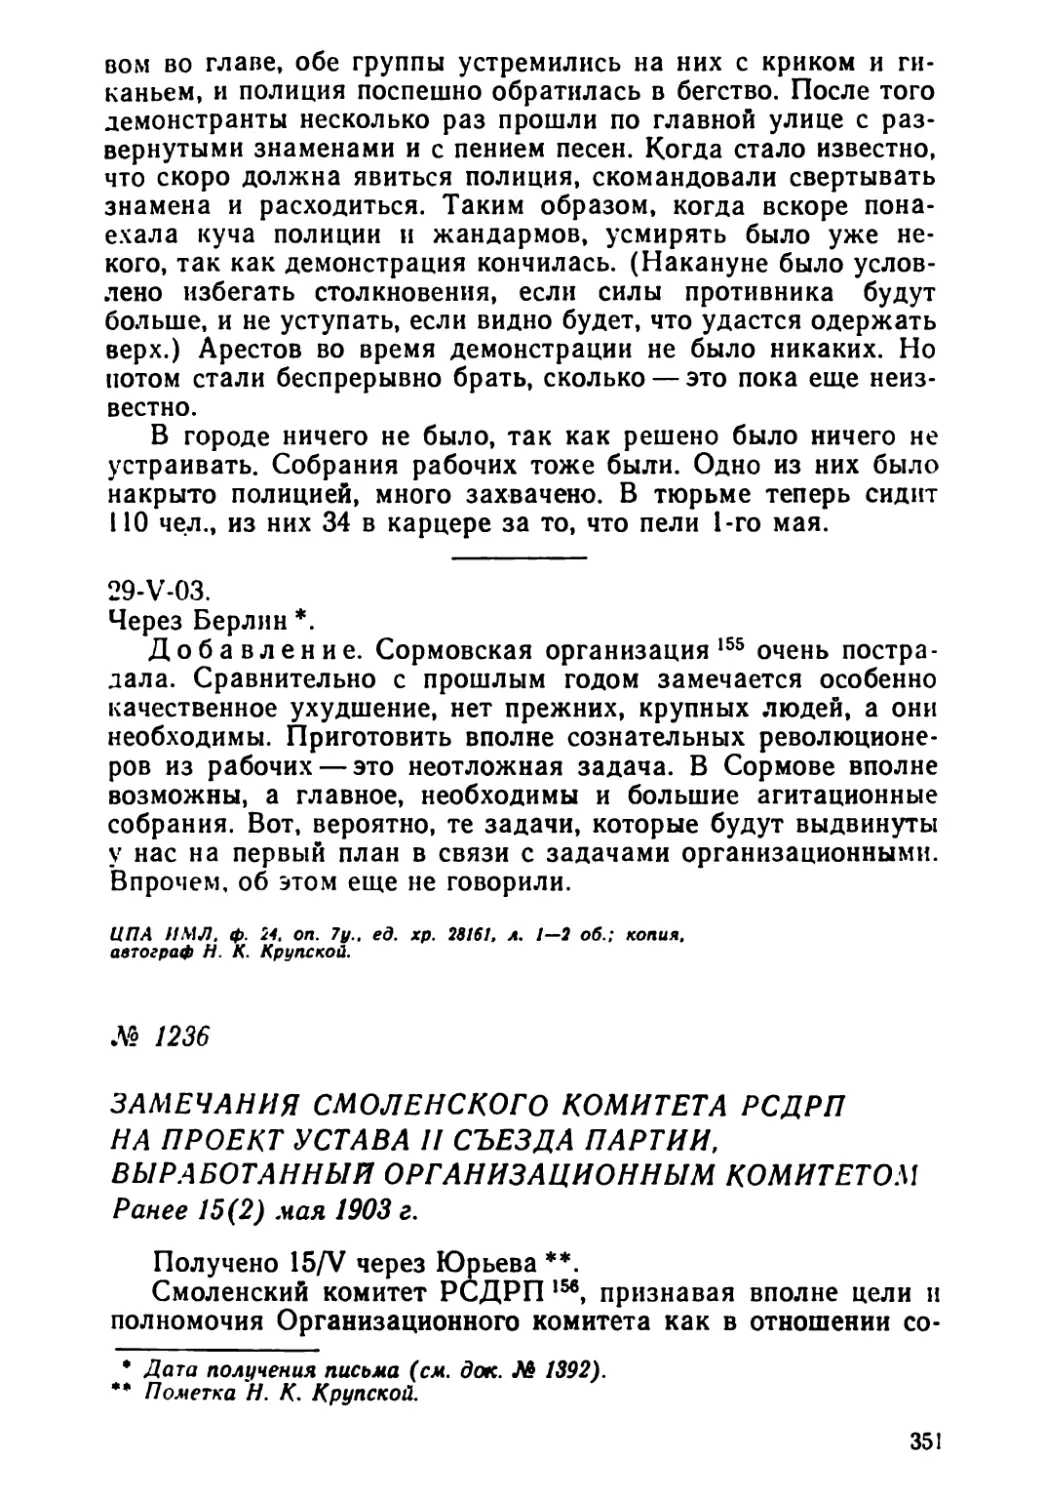 № 1236 Замечания Смоленского комитета РСДРП на проект Устава II съезда партии, выработанный ОК. Ранее 15 мая